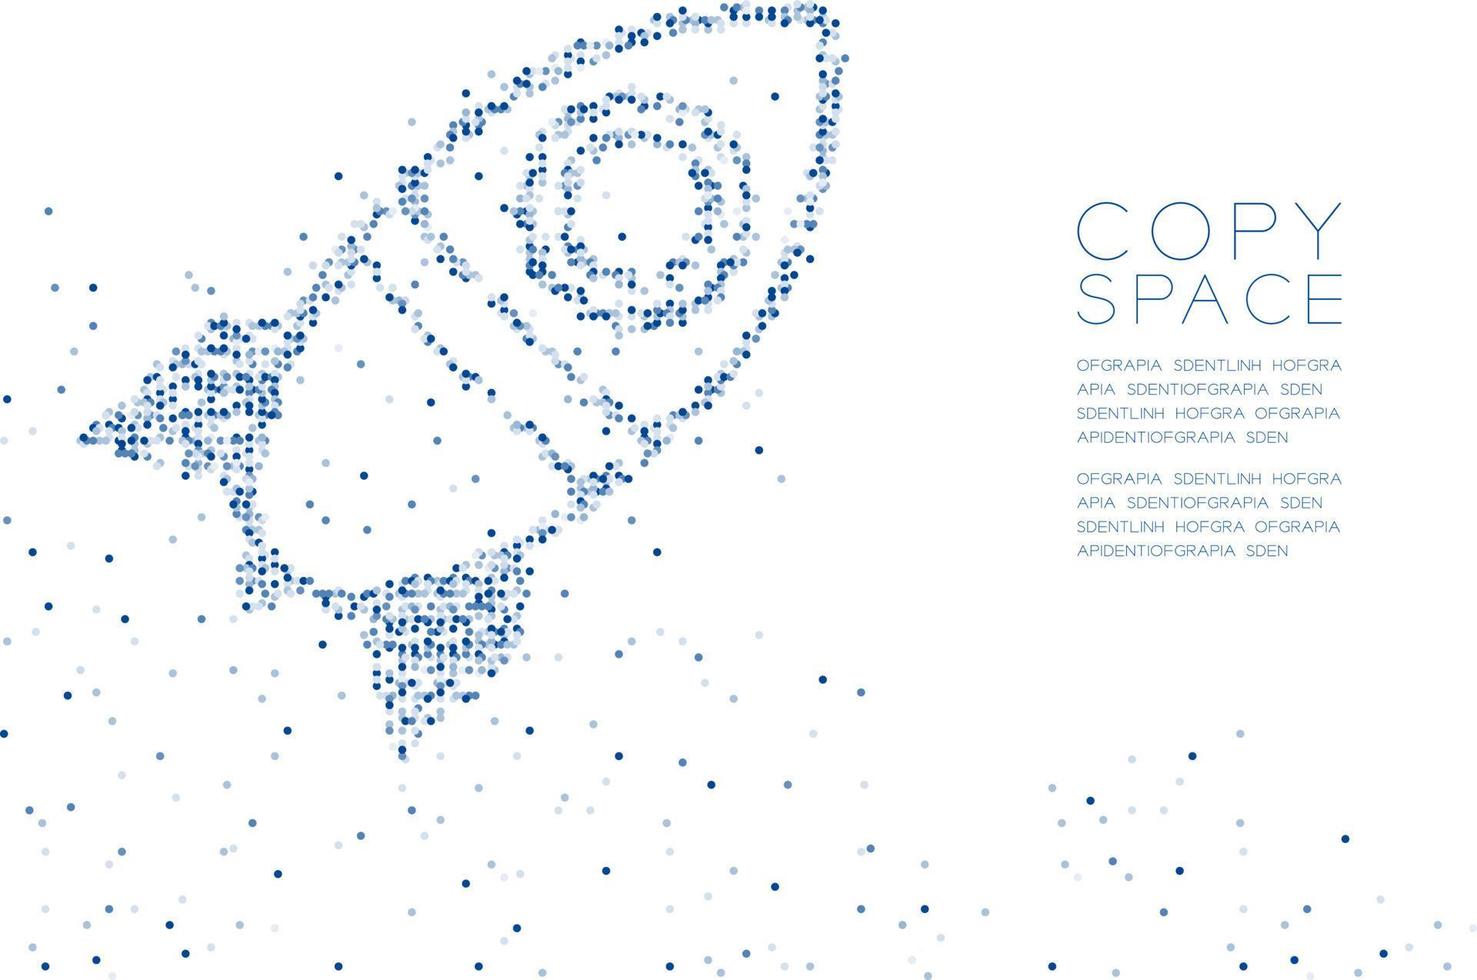 abstrakt geometrisk cirkel prick molekyl partikelmönster tecknad raket rymdskepp form, vr teknologi rymdutforskning koncept blå färg illustration isolerad på vit bakgrund med kopia utrymme vektor